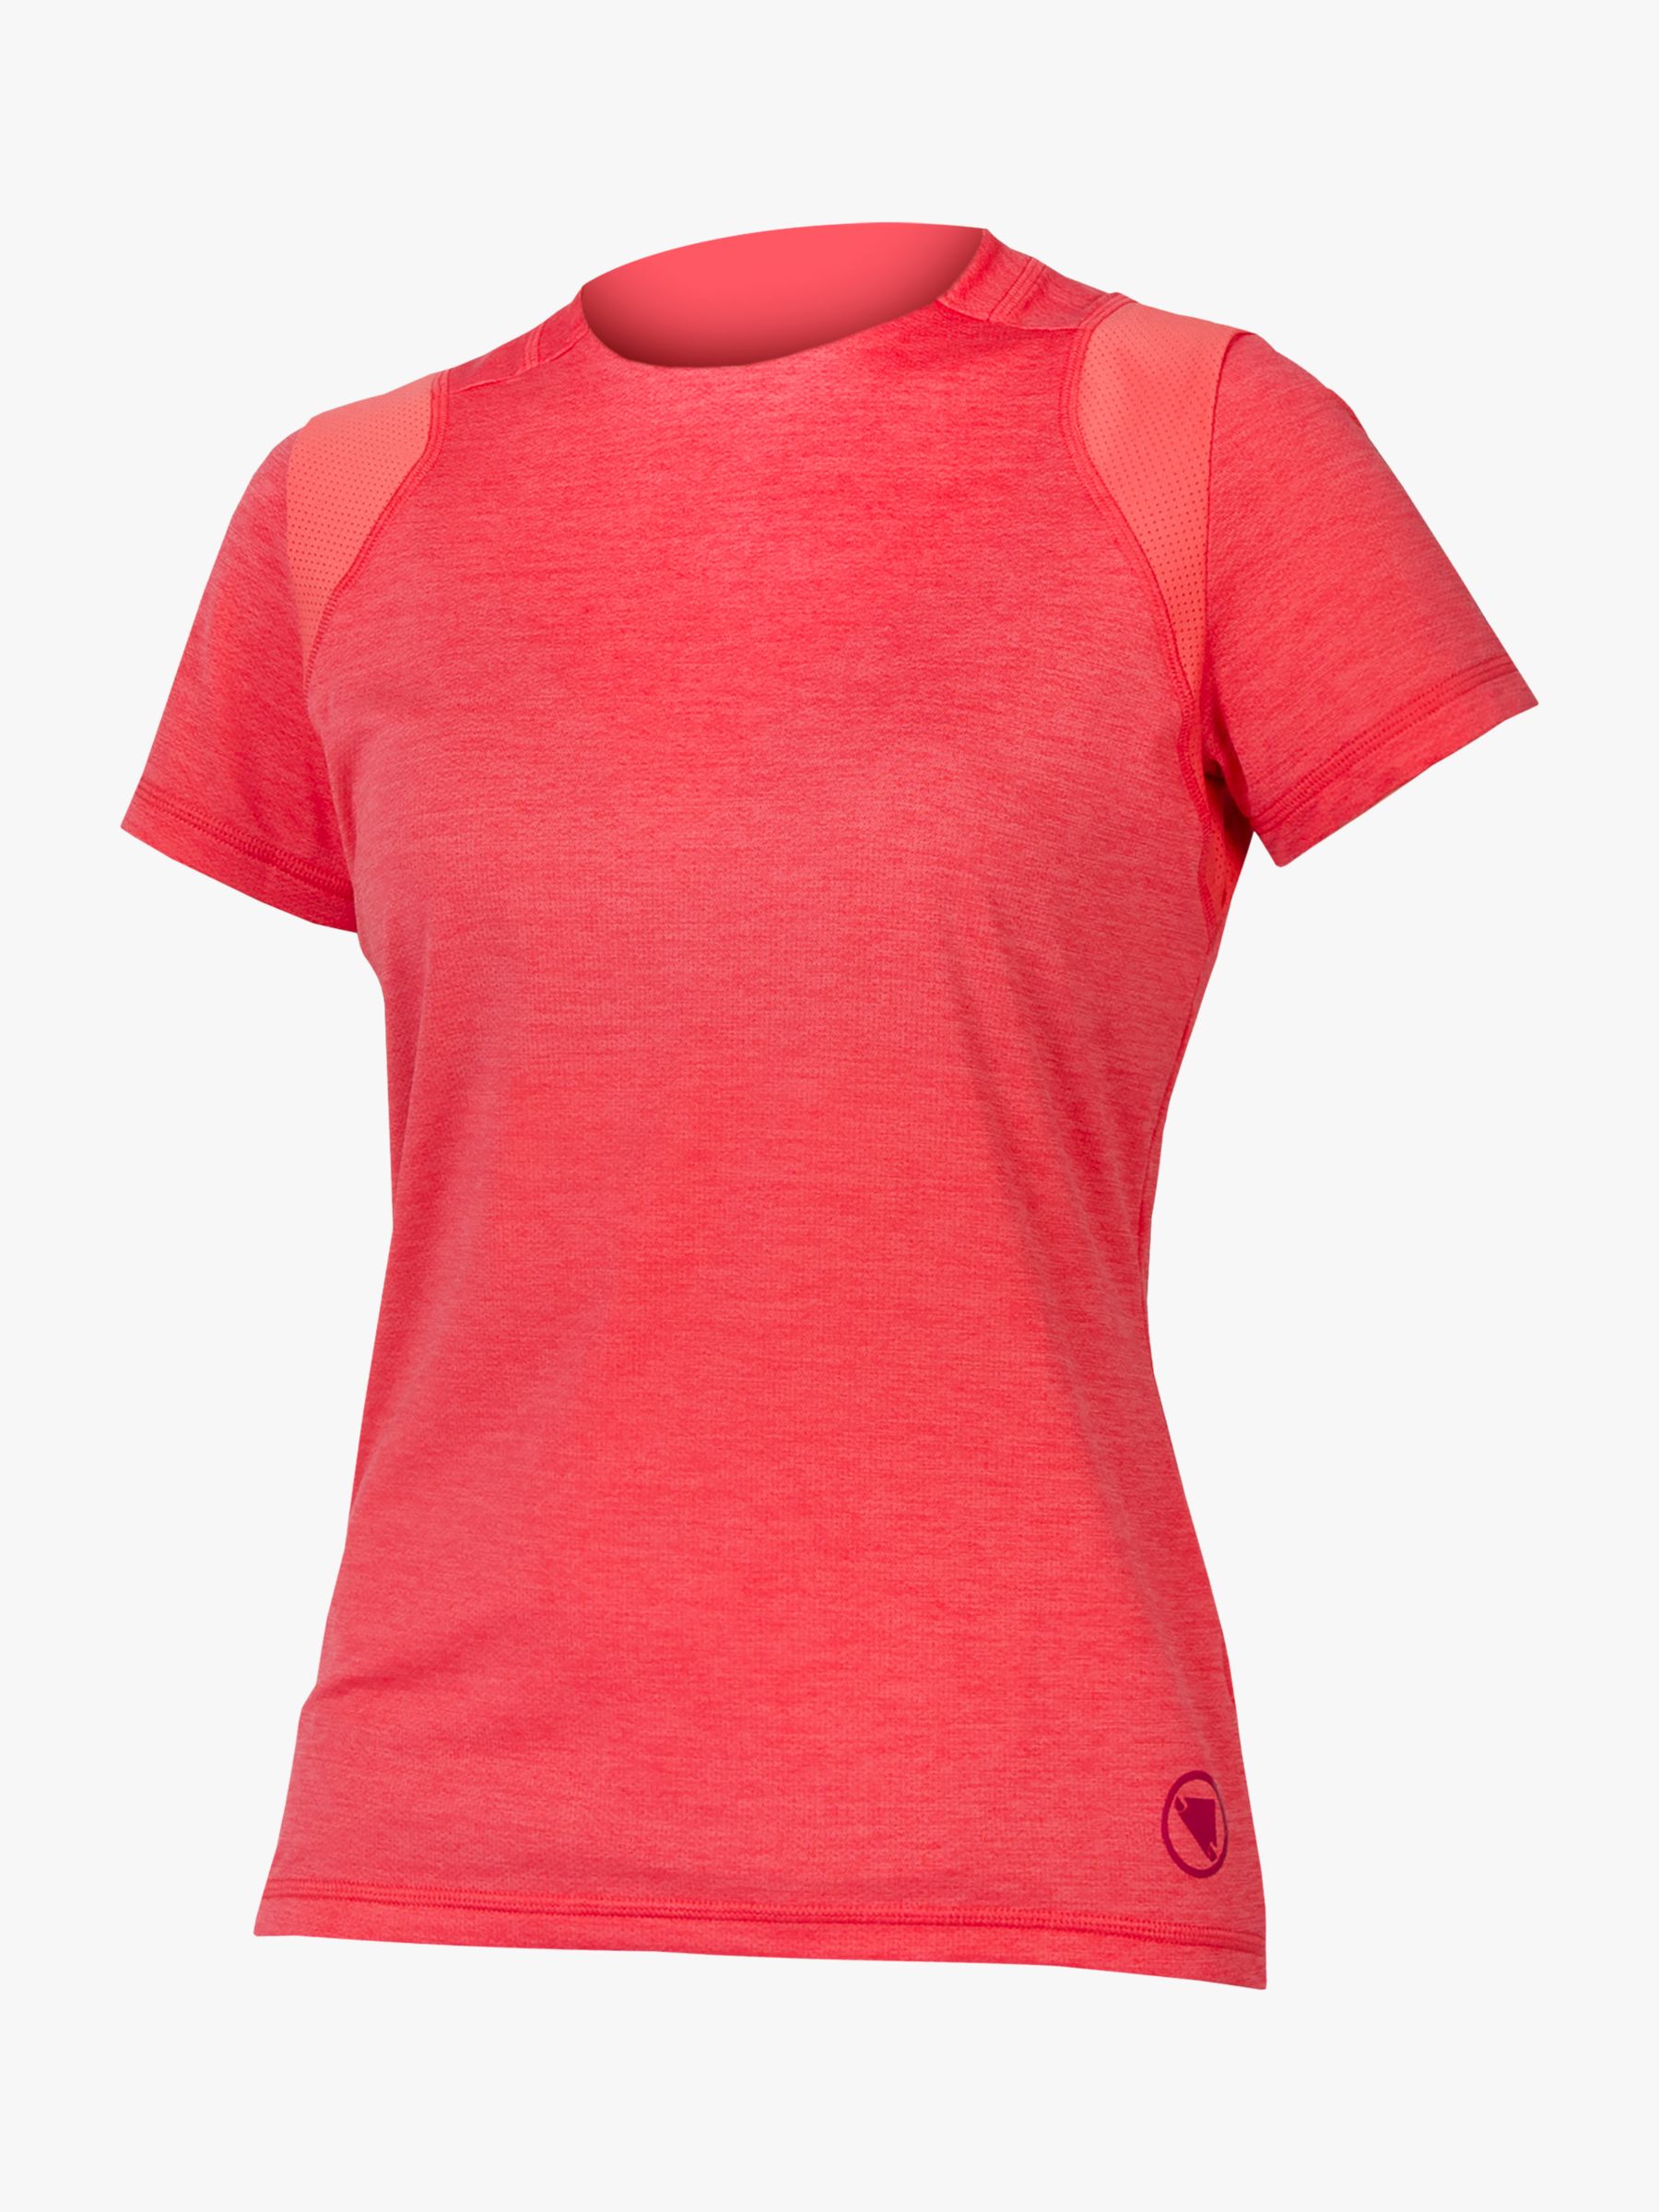 Endura Women's SingleTrack Short Sleeve Jersey, Punch Pink, XS